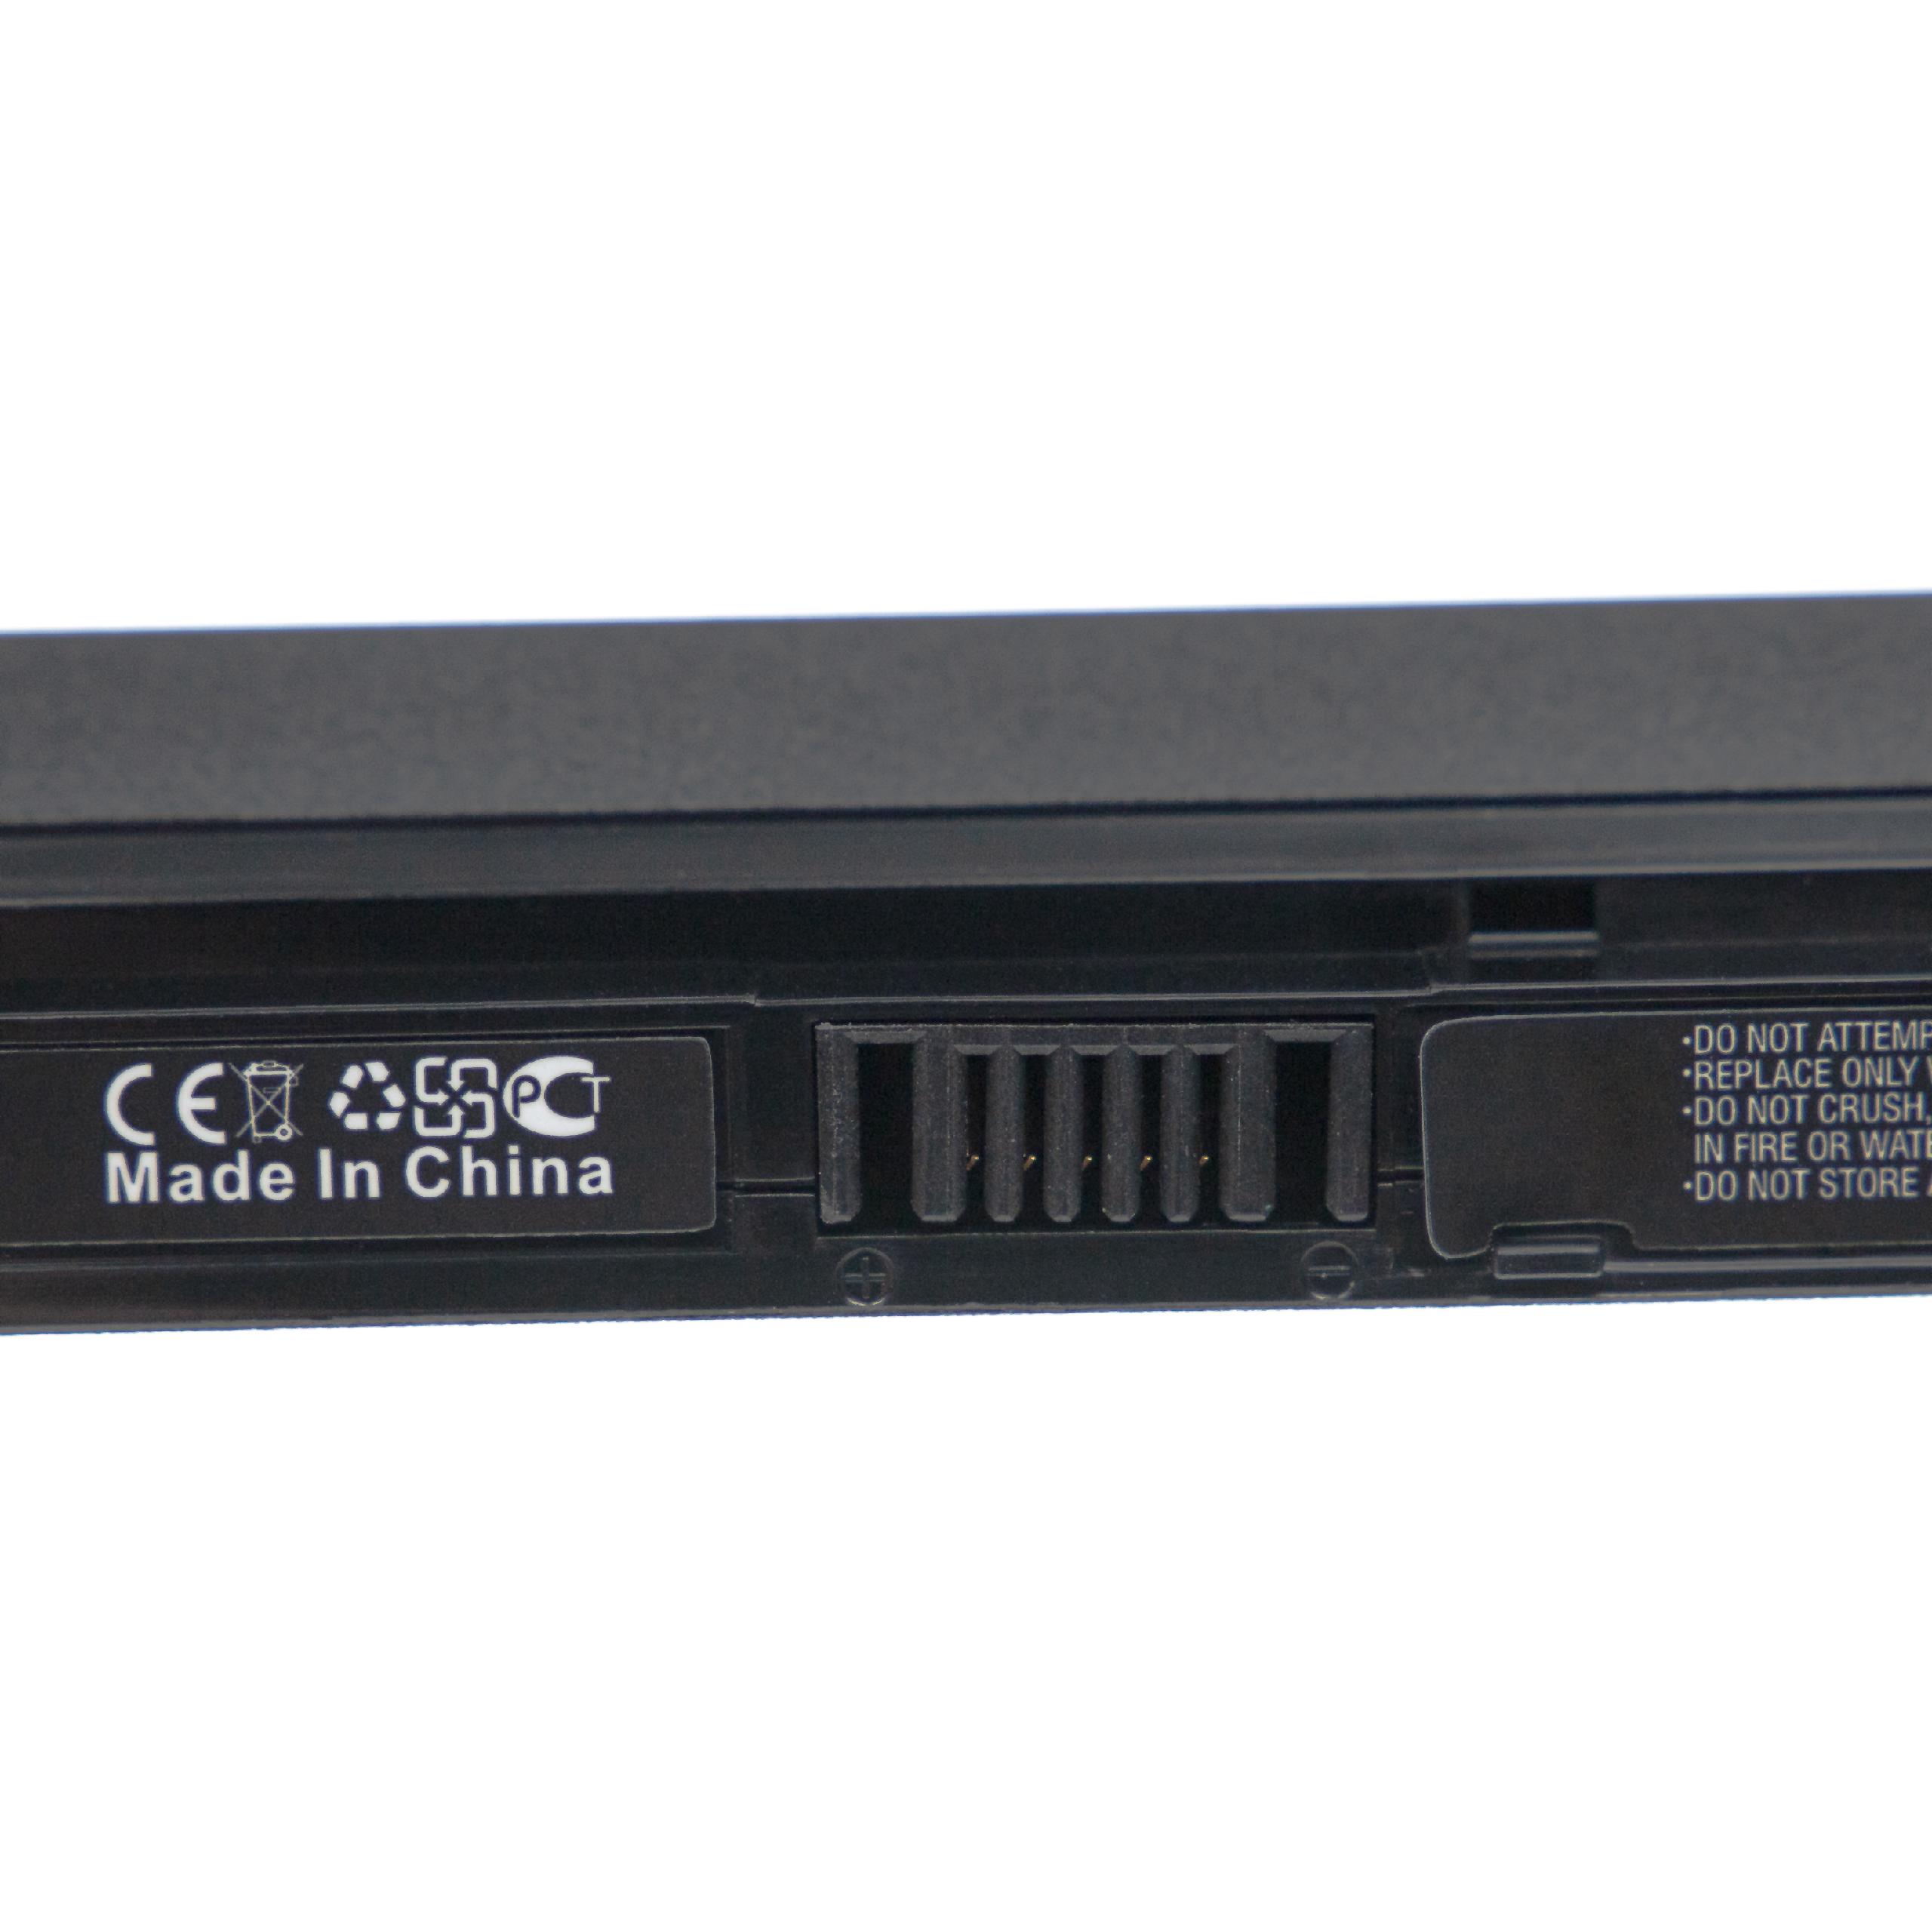 Batterie remplace Clevo 6-87-W95KS, 6-87-W95KS-42F2 pour ordinateur portable - 2200mAh 14,8V Li-ion, noir